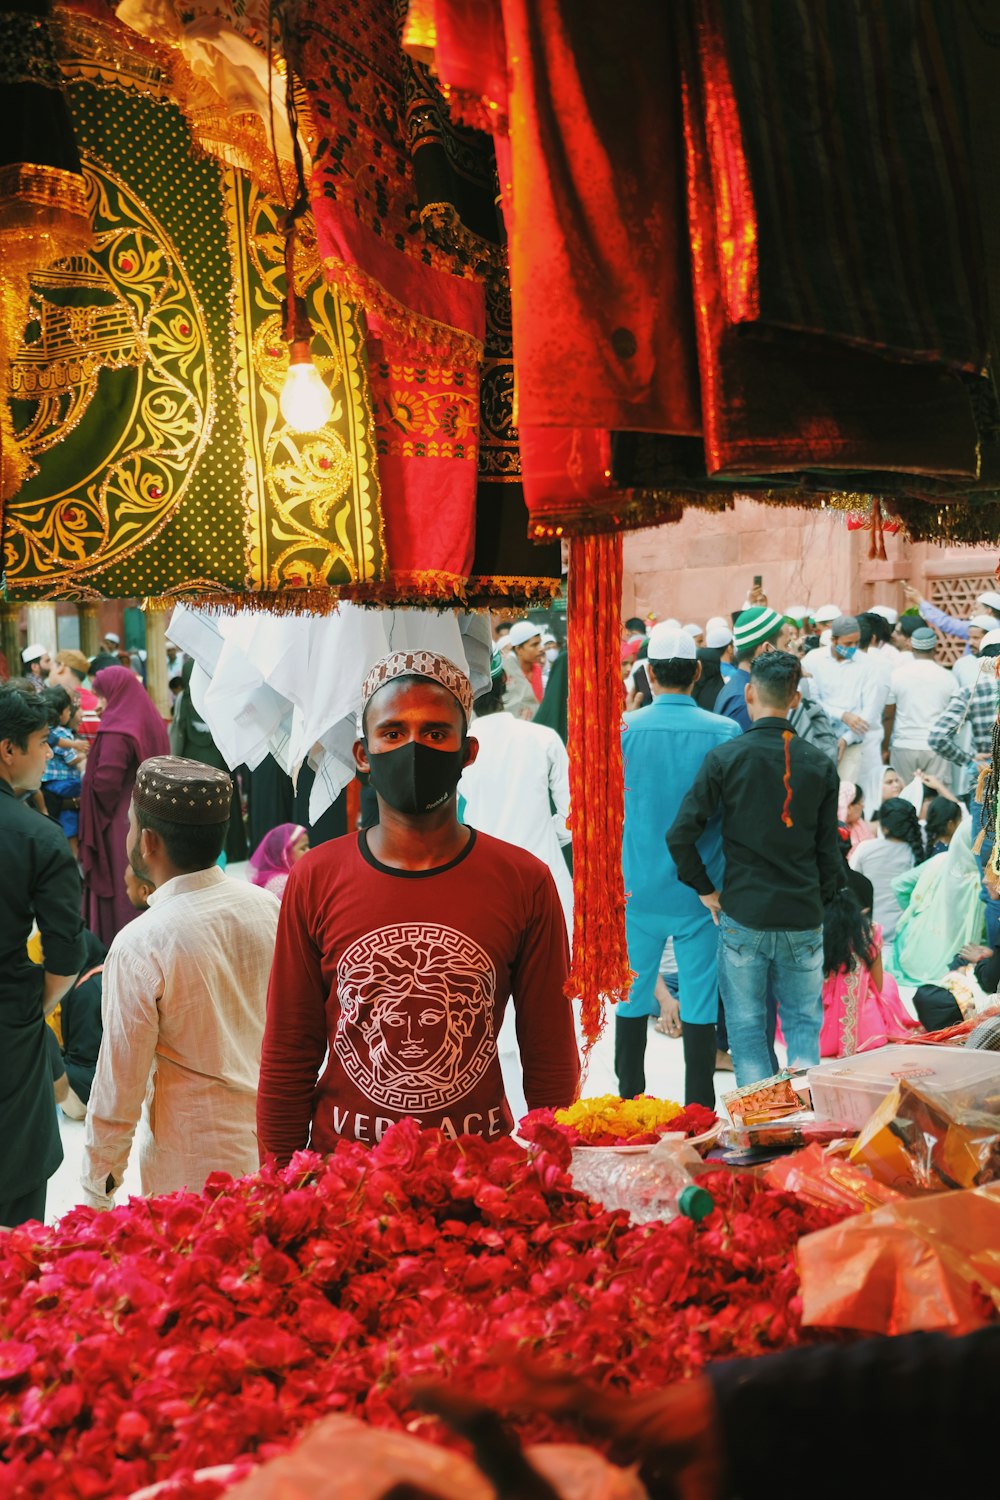 Ein Mann mit Gesichtsmaske steht vor einem Blumenstrauß